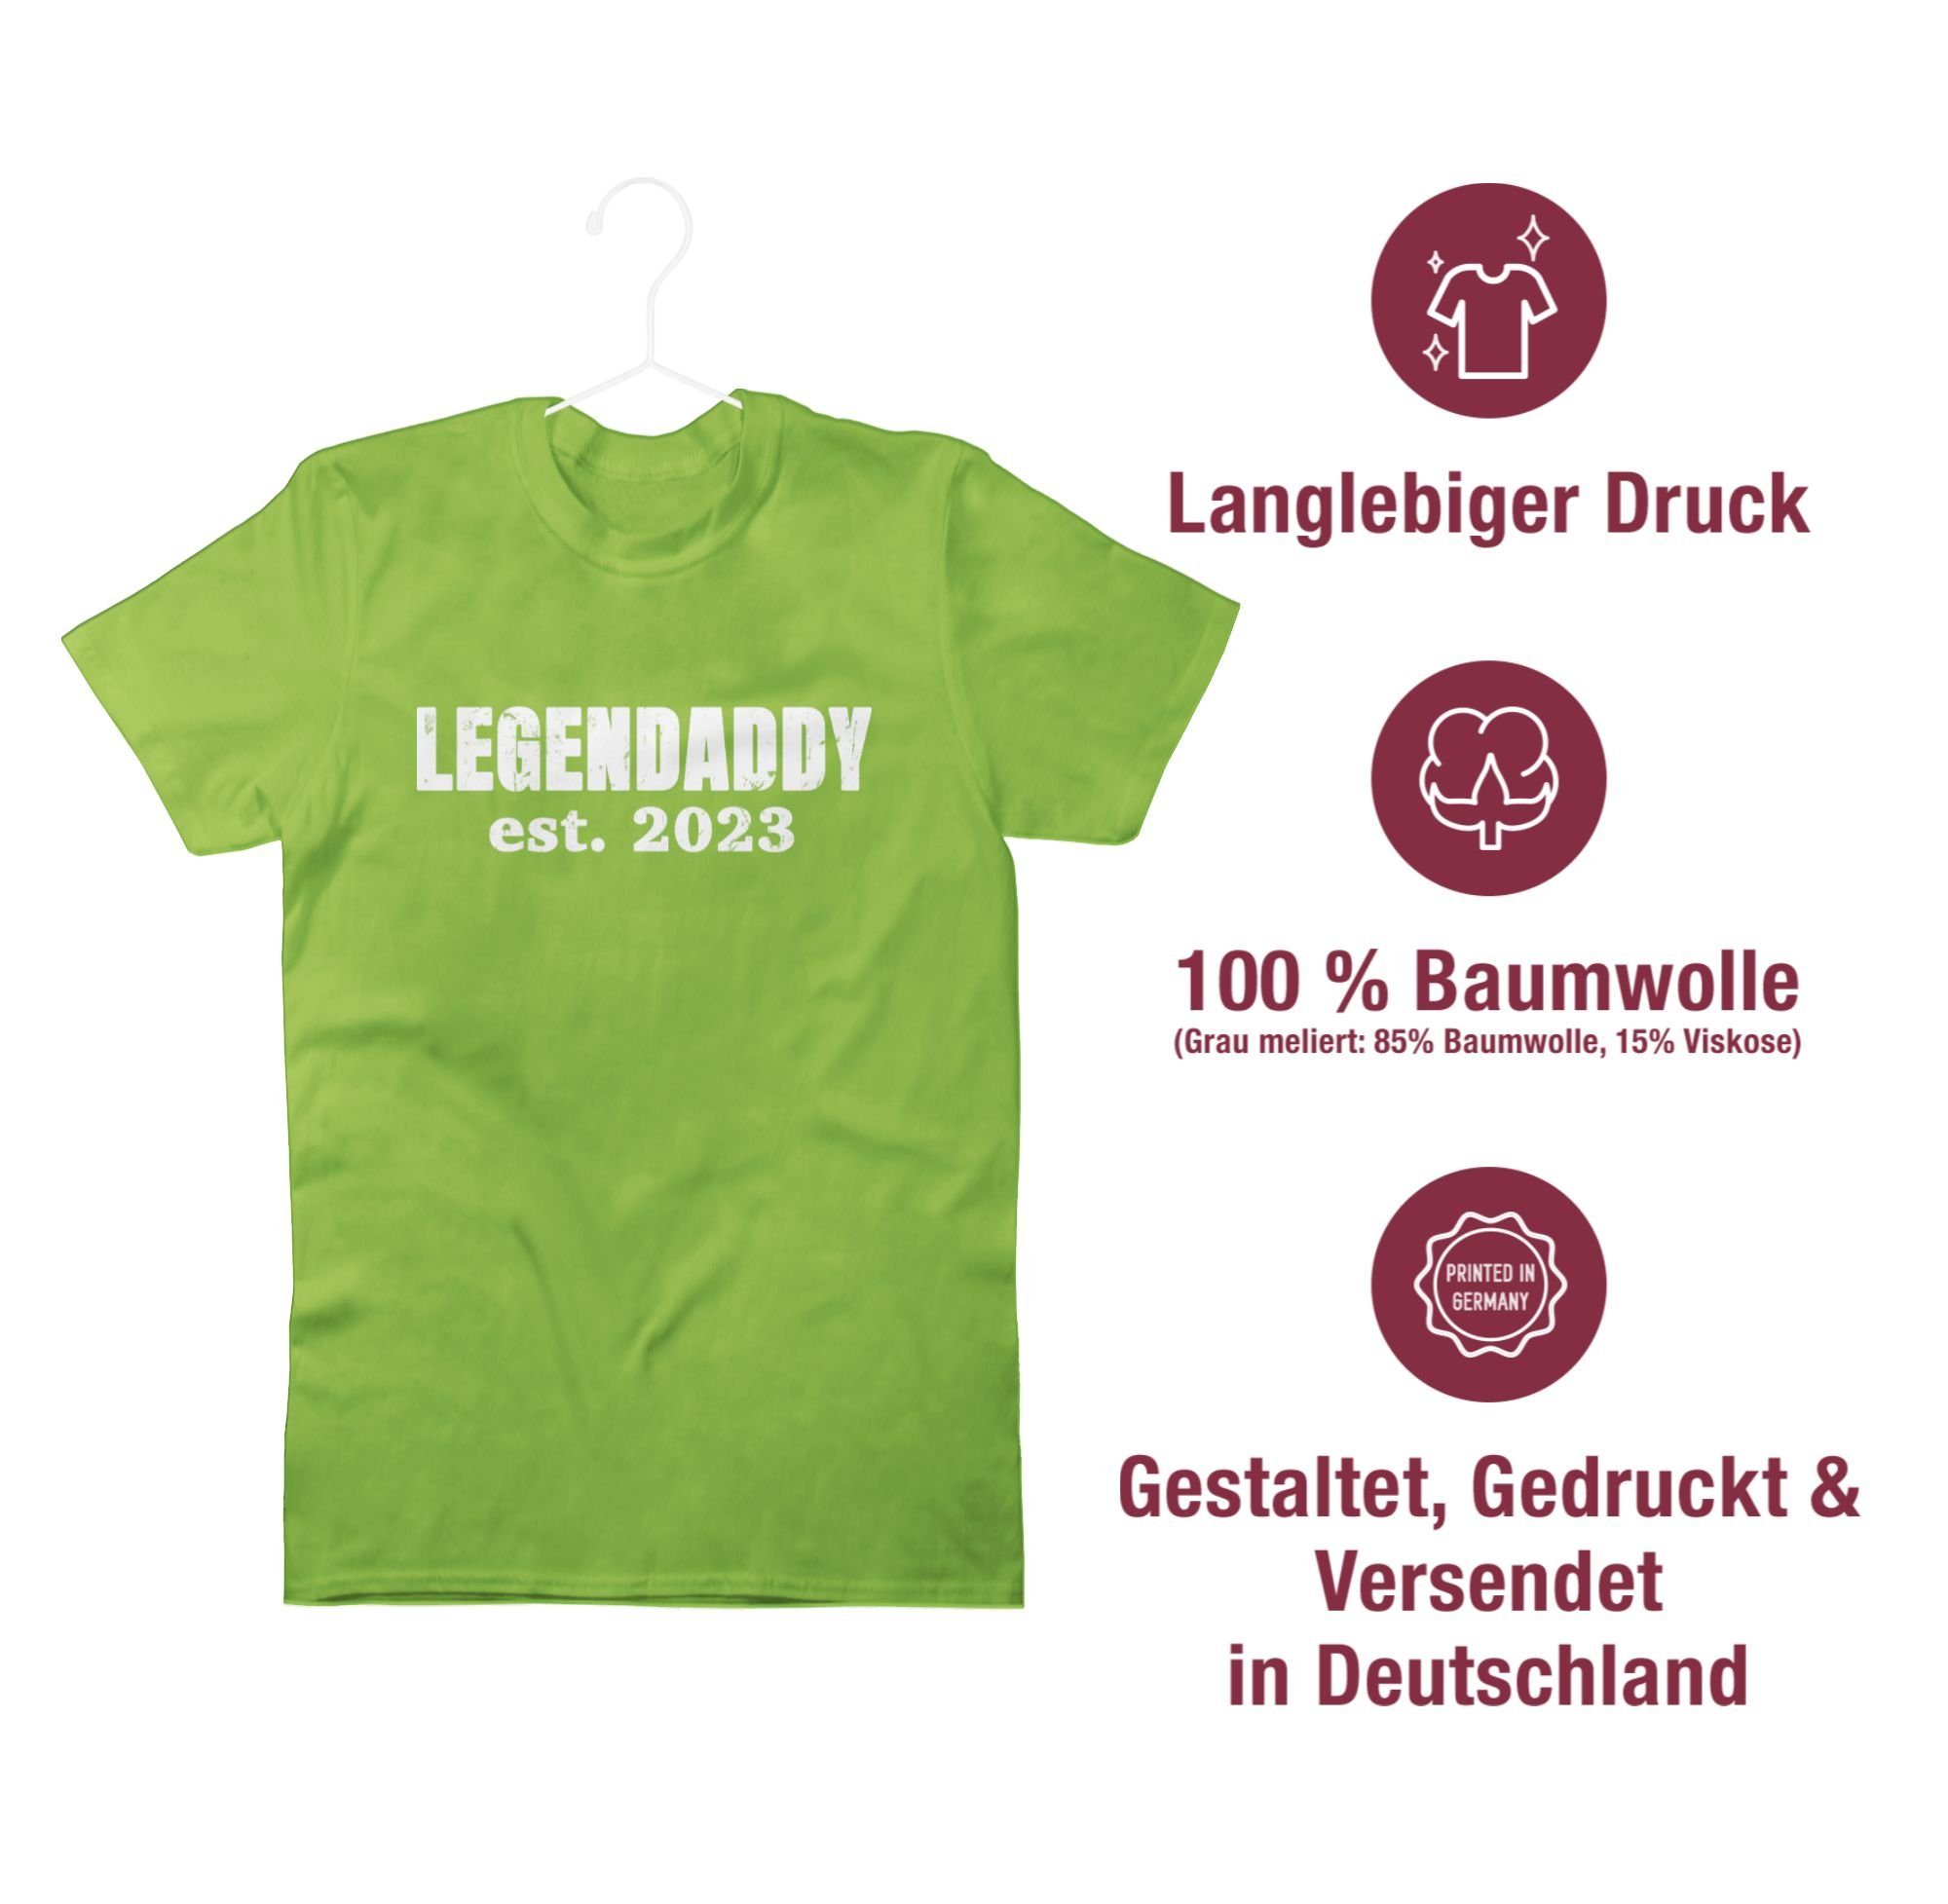 Shirtracer T-Shirt Papa est. für 2023 weiß 02 Hellgrün Vatertag Geschenk Legendaddy